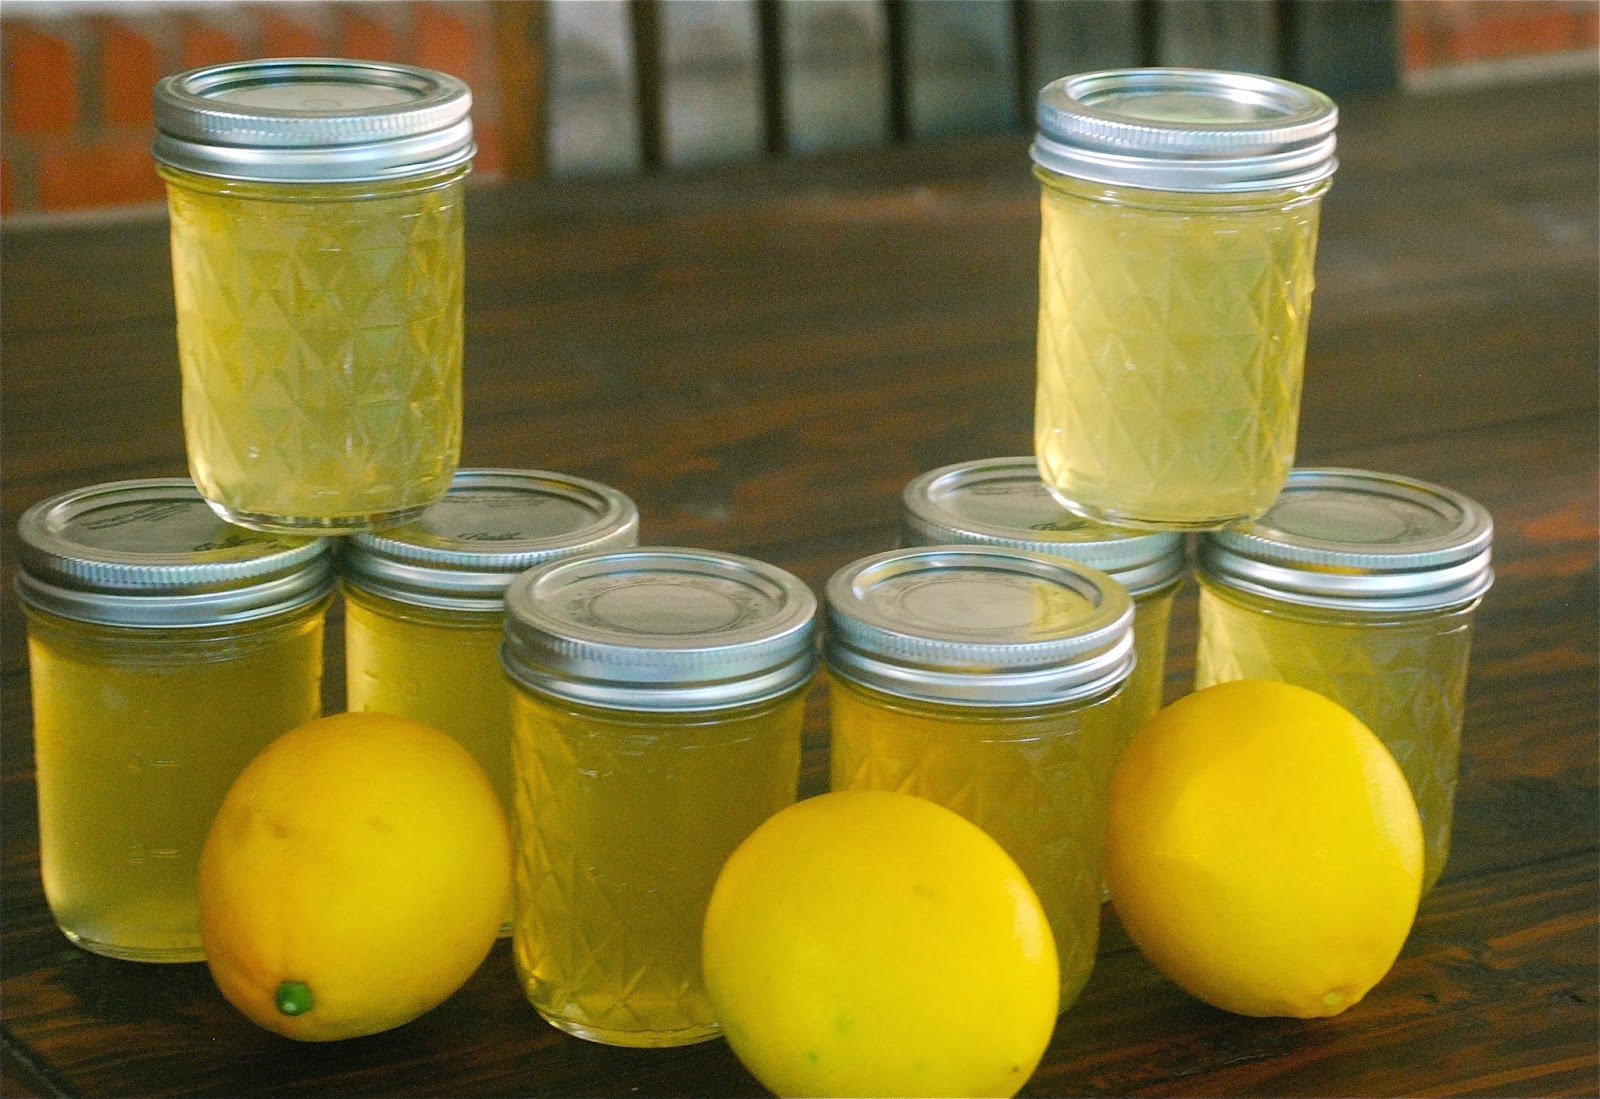 Варенье из лимона на зиму: польза, рецепт с фото через мясорубку, с кожурой и без